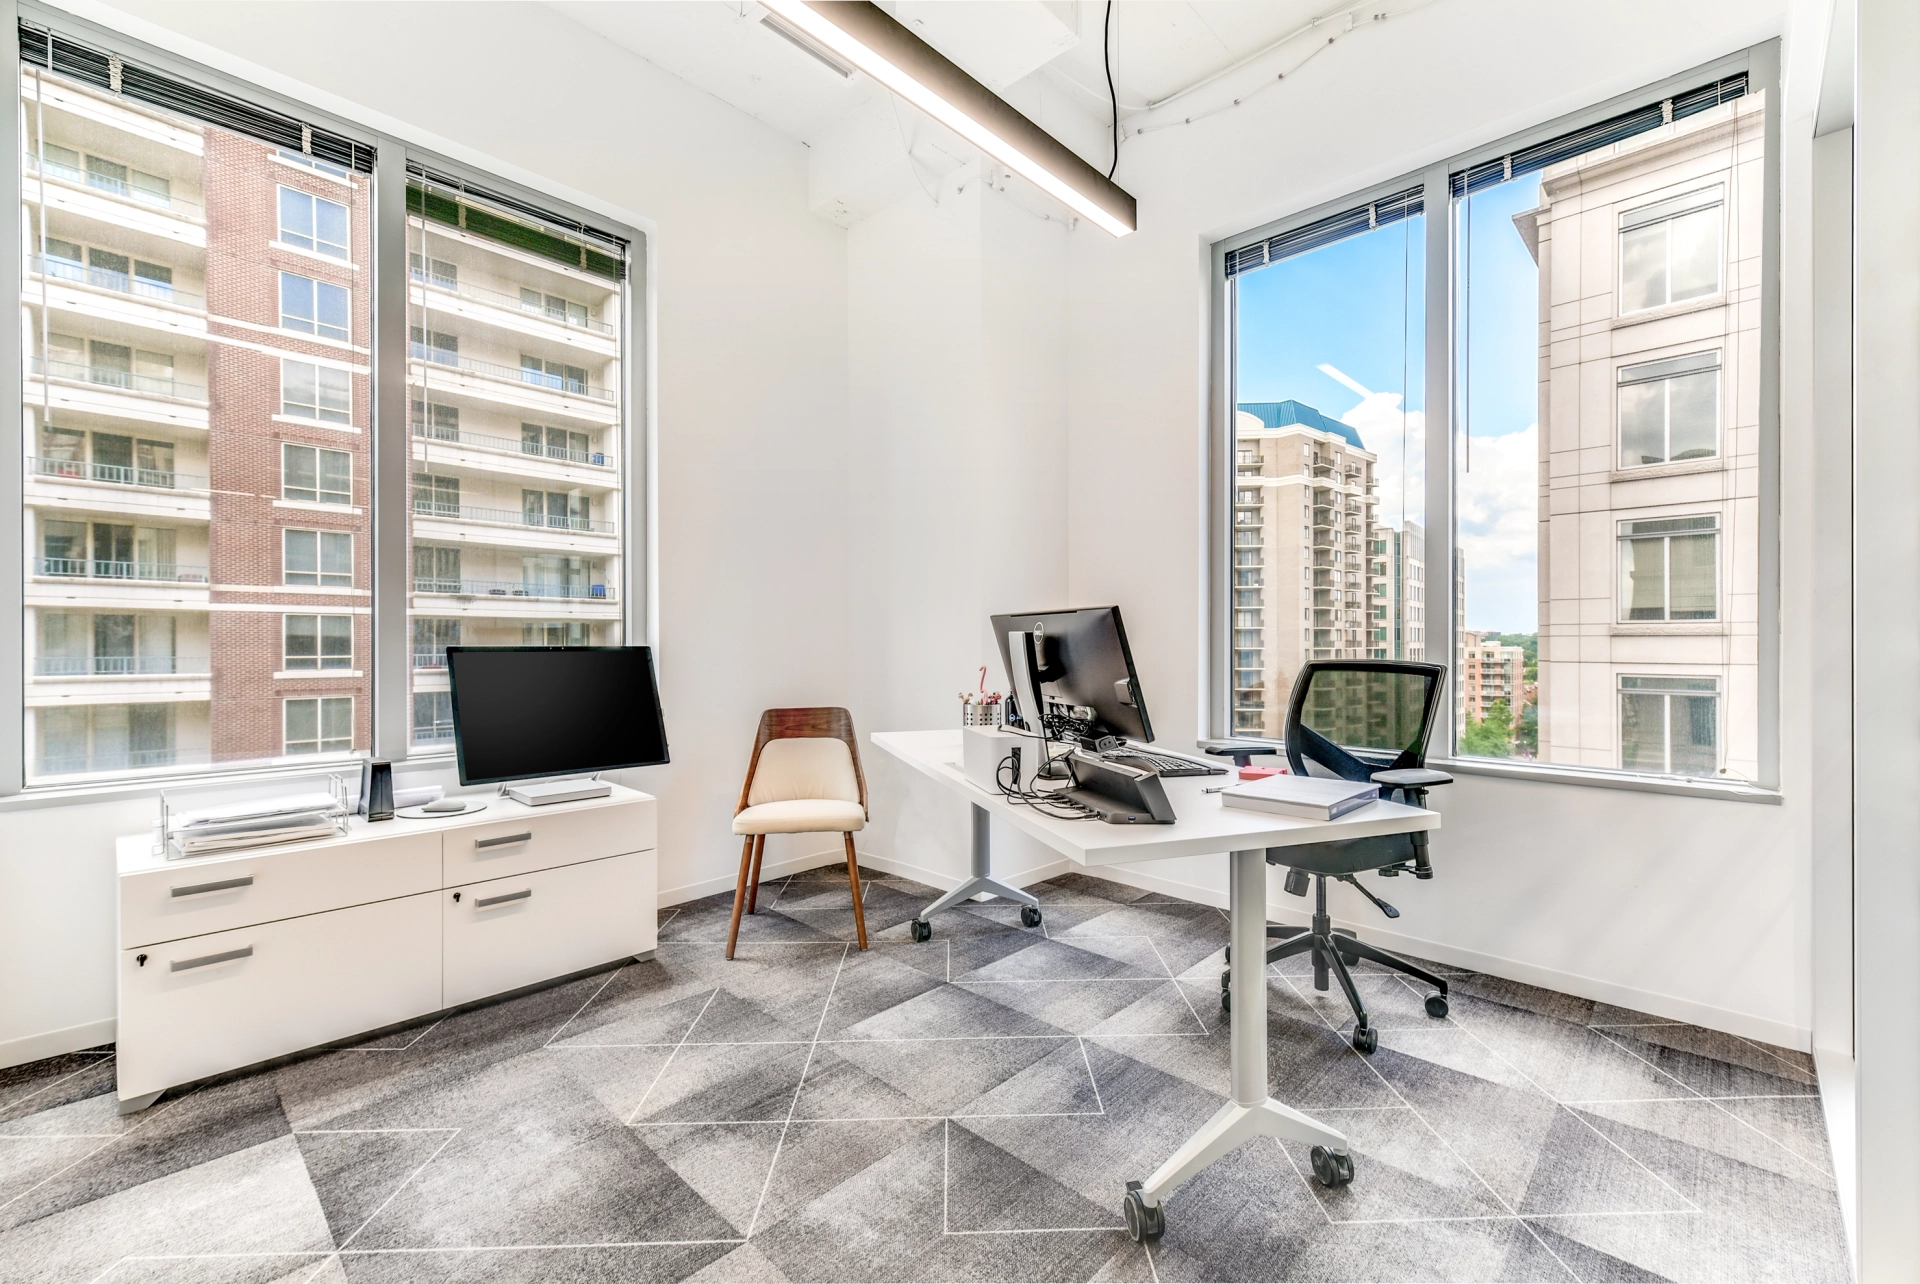 Espace de coworking Arlington avec de grandes fenêtres et un bureau, parfait comme salle de réunion.